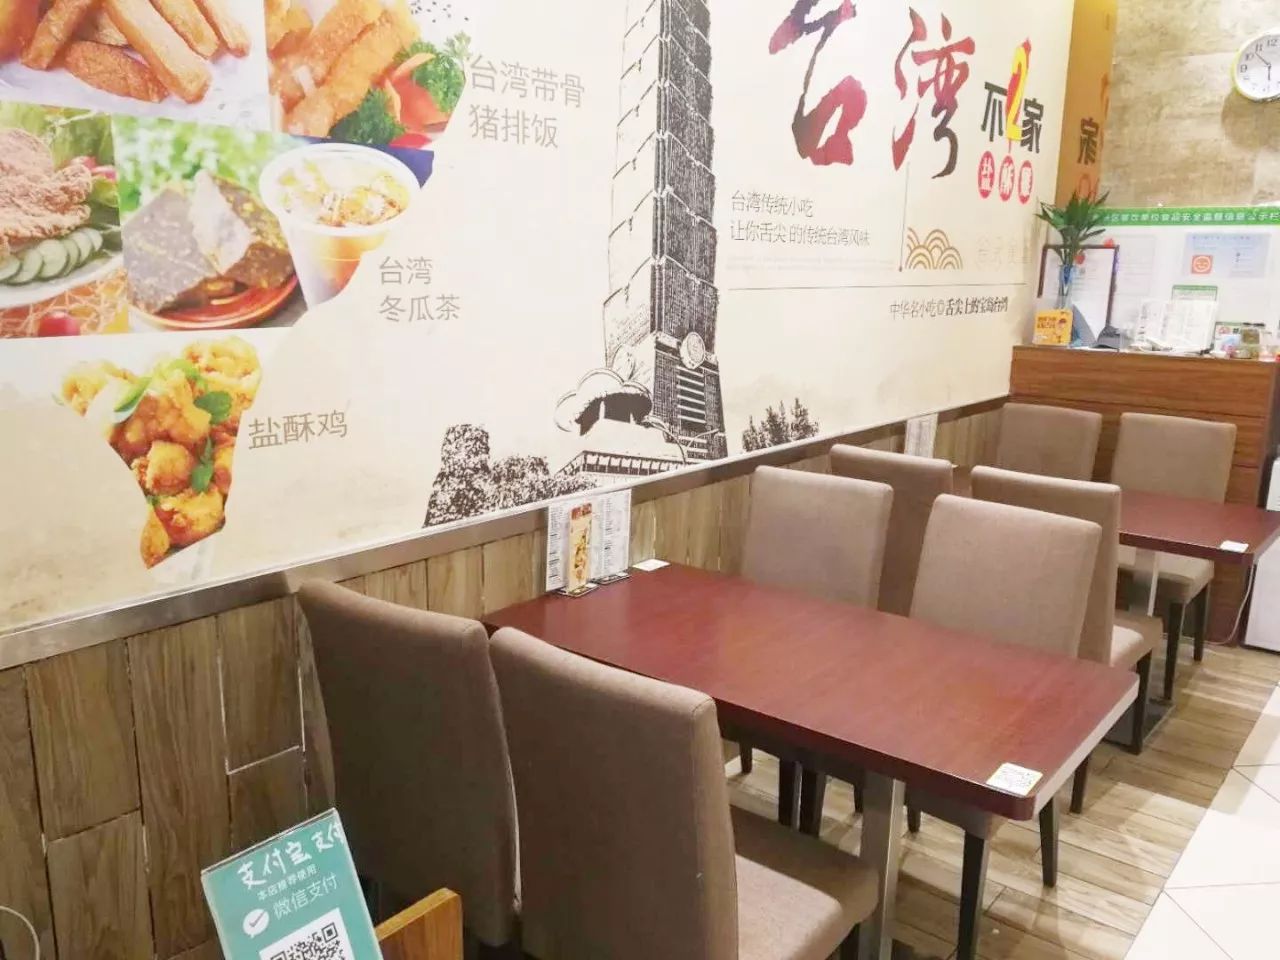 珠海唯一一家台湾人开的正宗台湾菜馆,终于来发福利了!